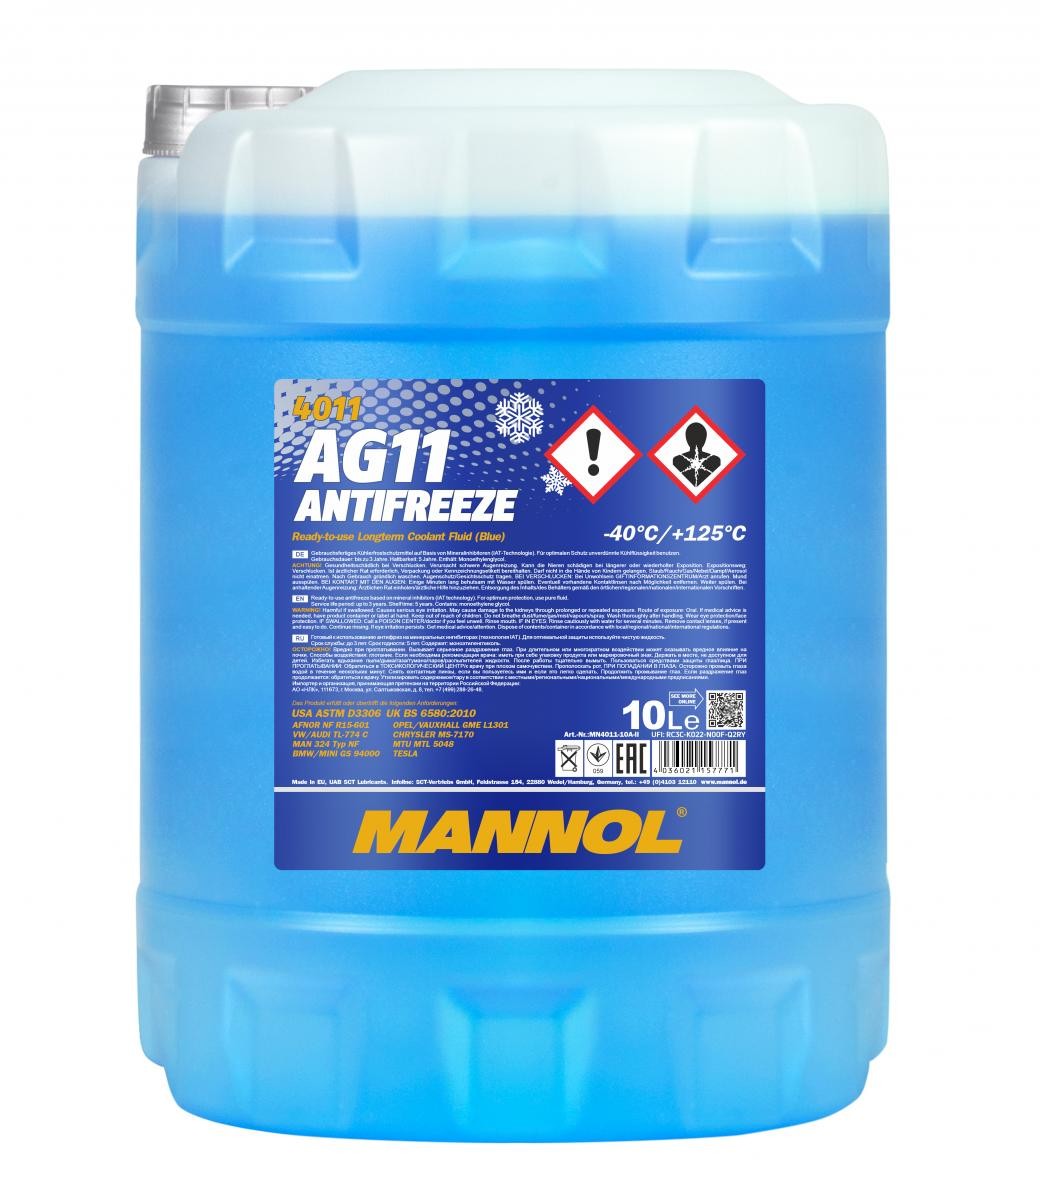 60 Liter PEMCO Antifreeze 911 Kühlerfrostschutz blau Fertiggemisch Typ G11